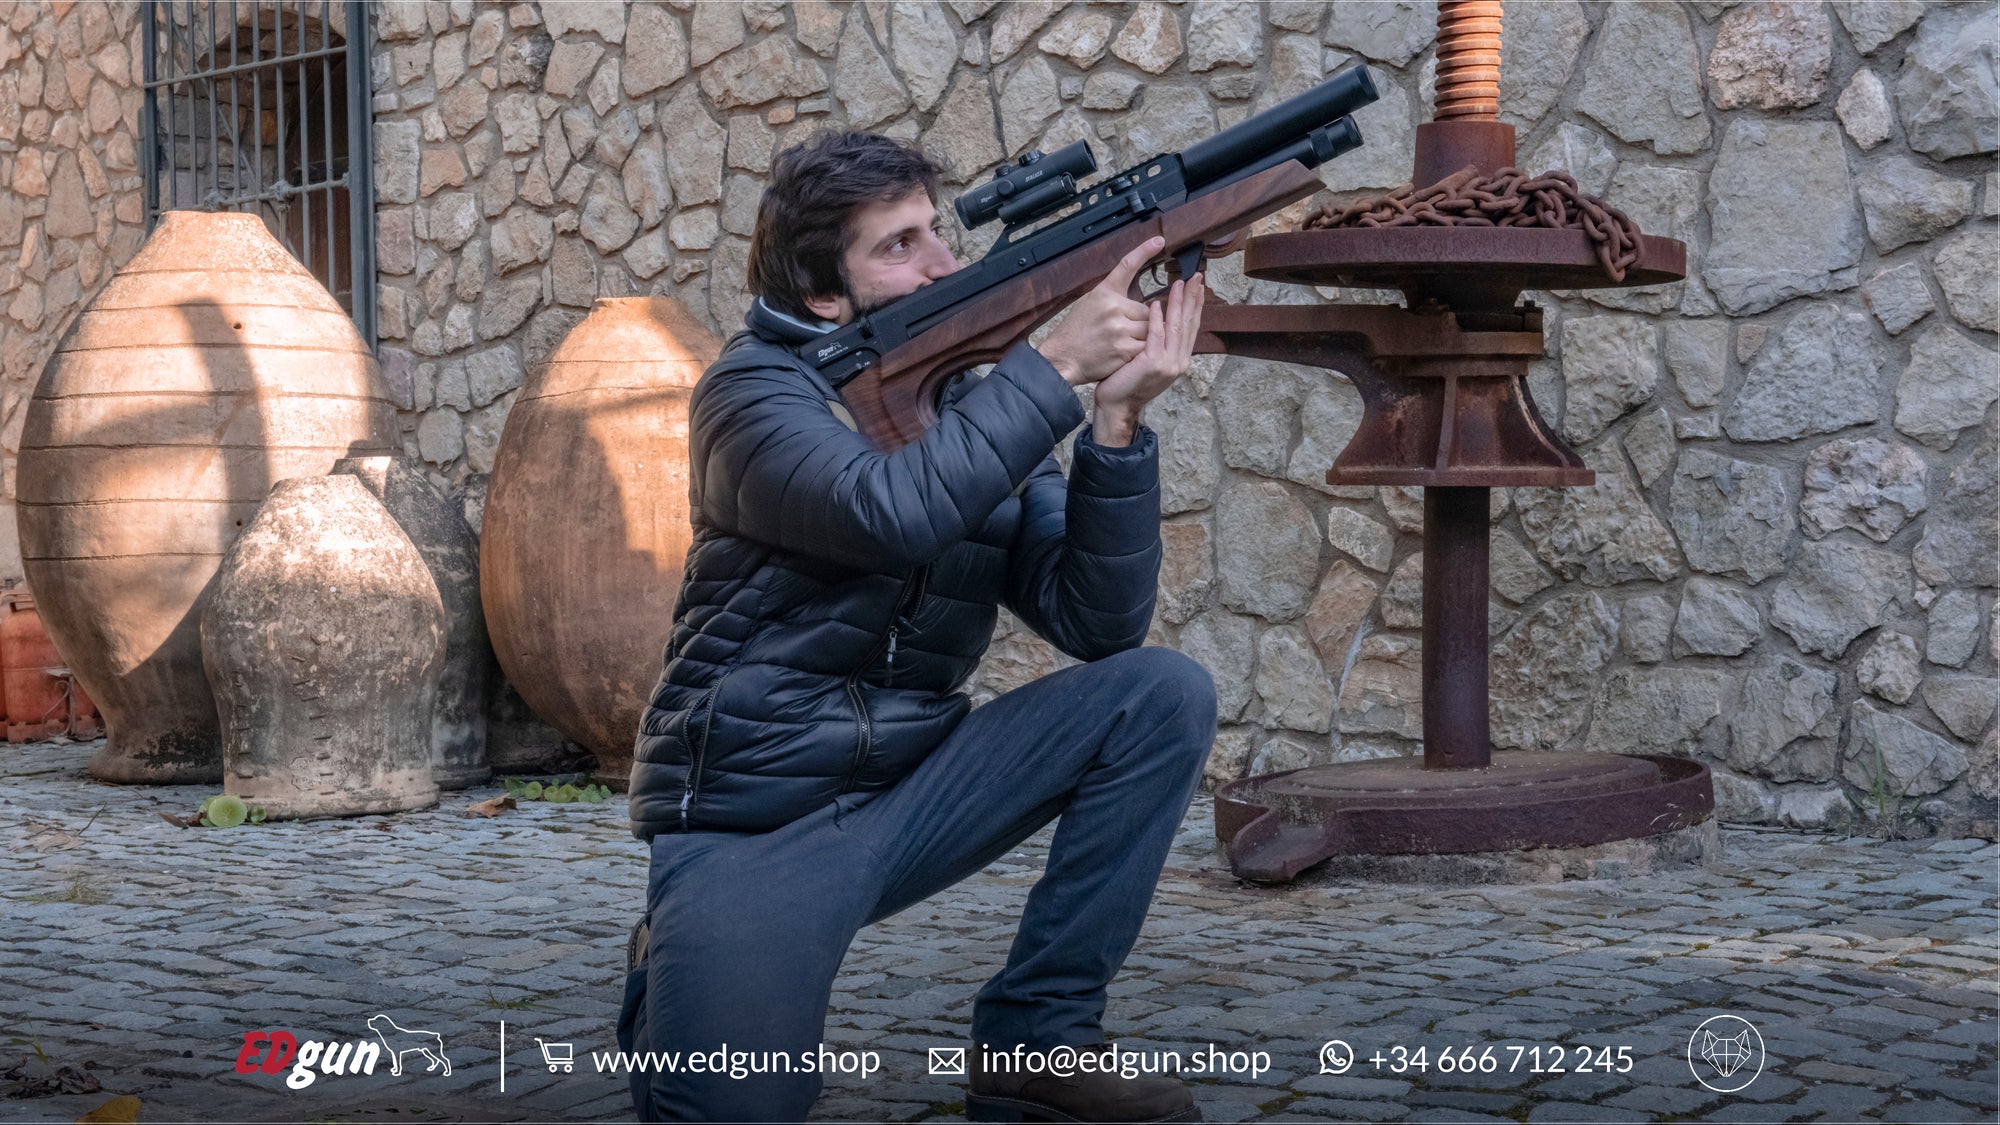 Image of Francisco shooting the Standard EDgun Matador R5M